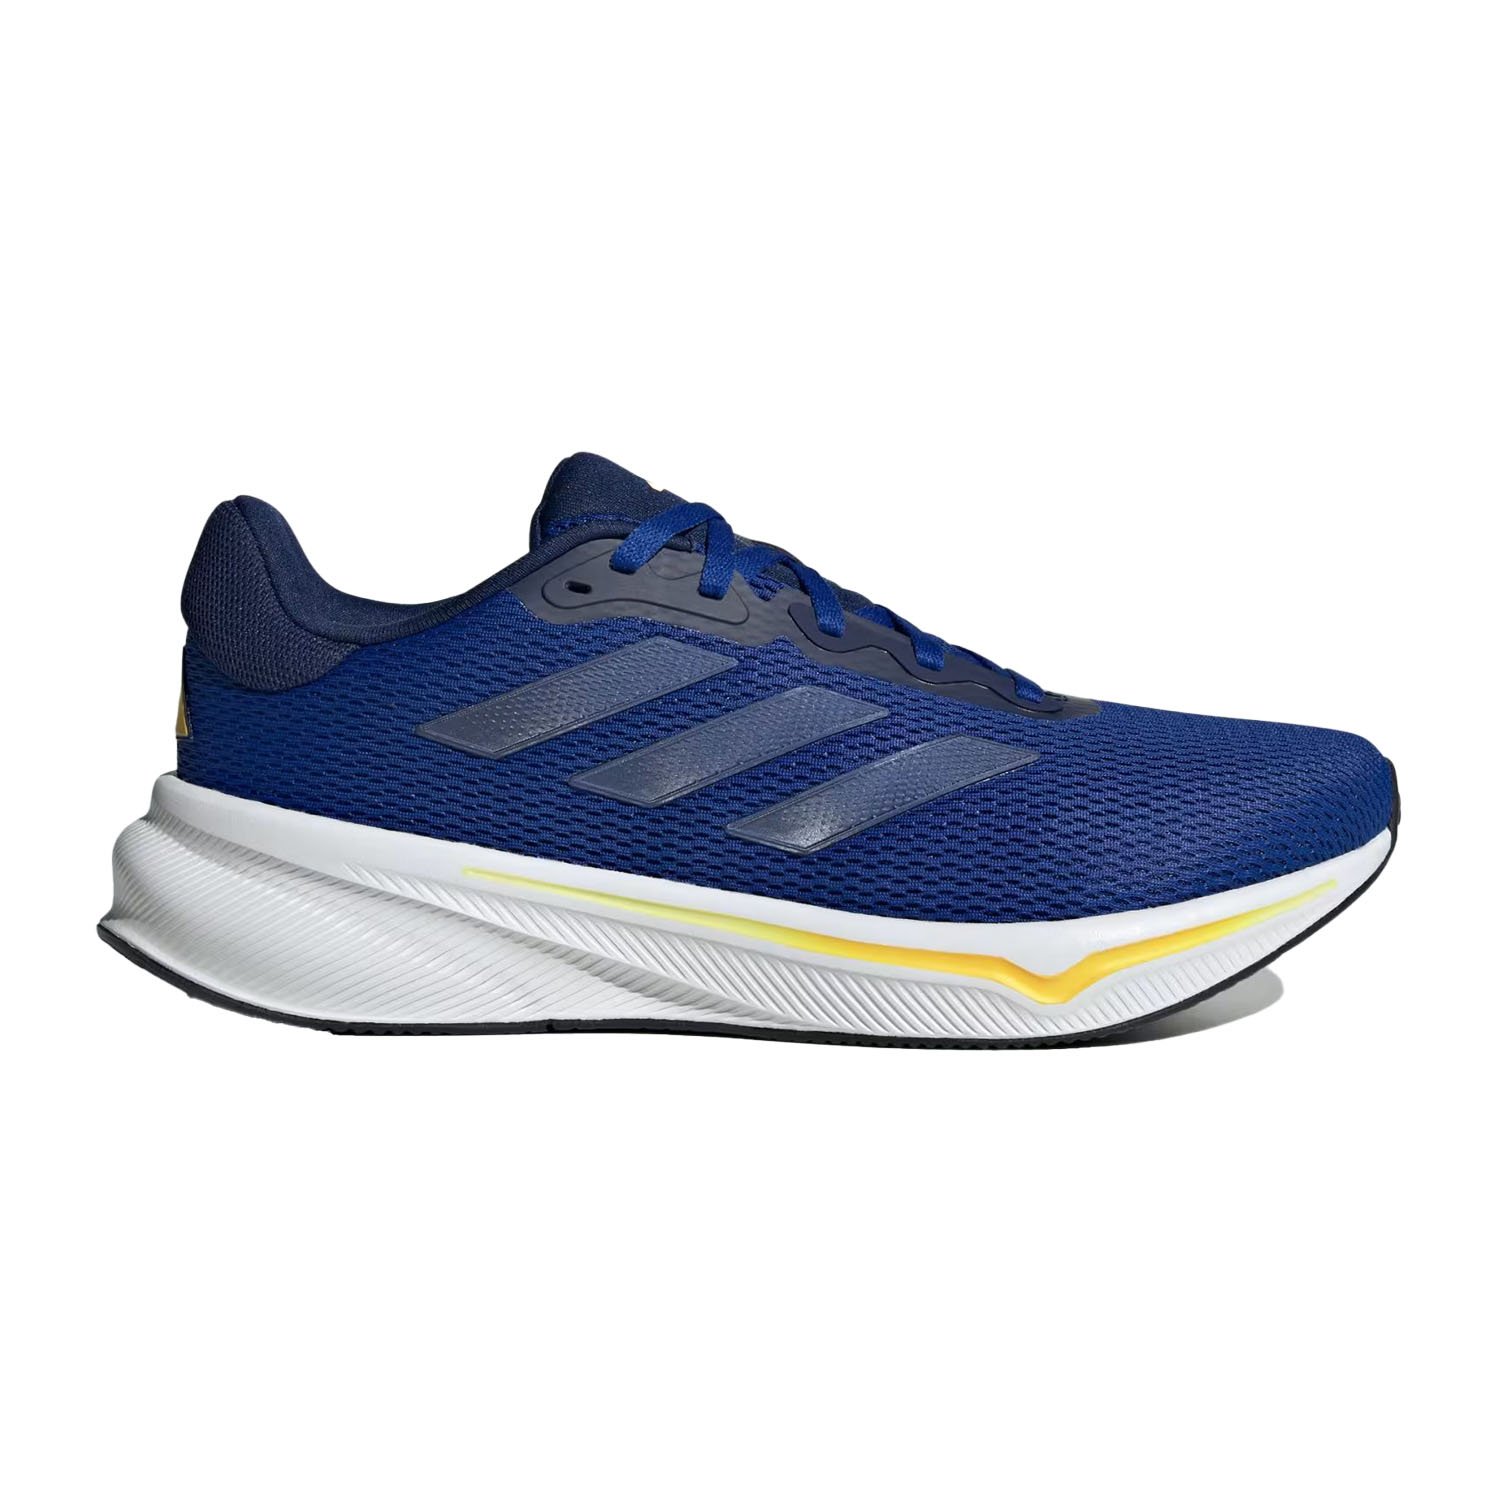 Adidas Response Erkek Koşu Ayakkabısı - Mavi - 1